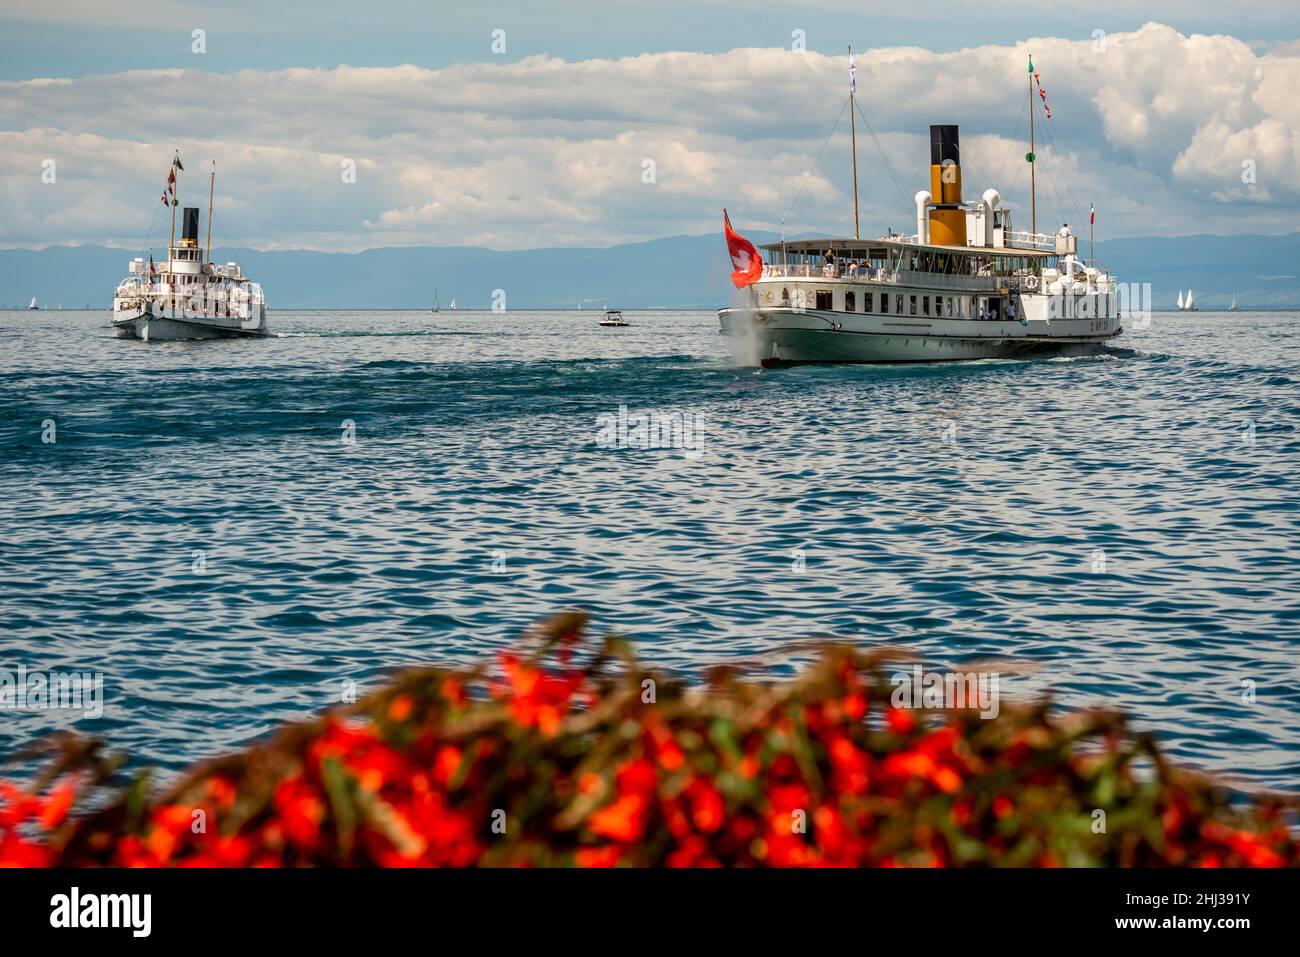 Morges, canton de Vaud, Suisse - 21.06.2021: Bateau à vapeur suisse avec passagers sur le lac Léman.Bateau CGN en été. Banque D'Images